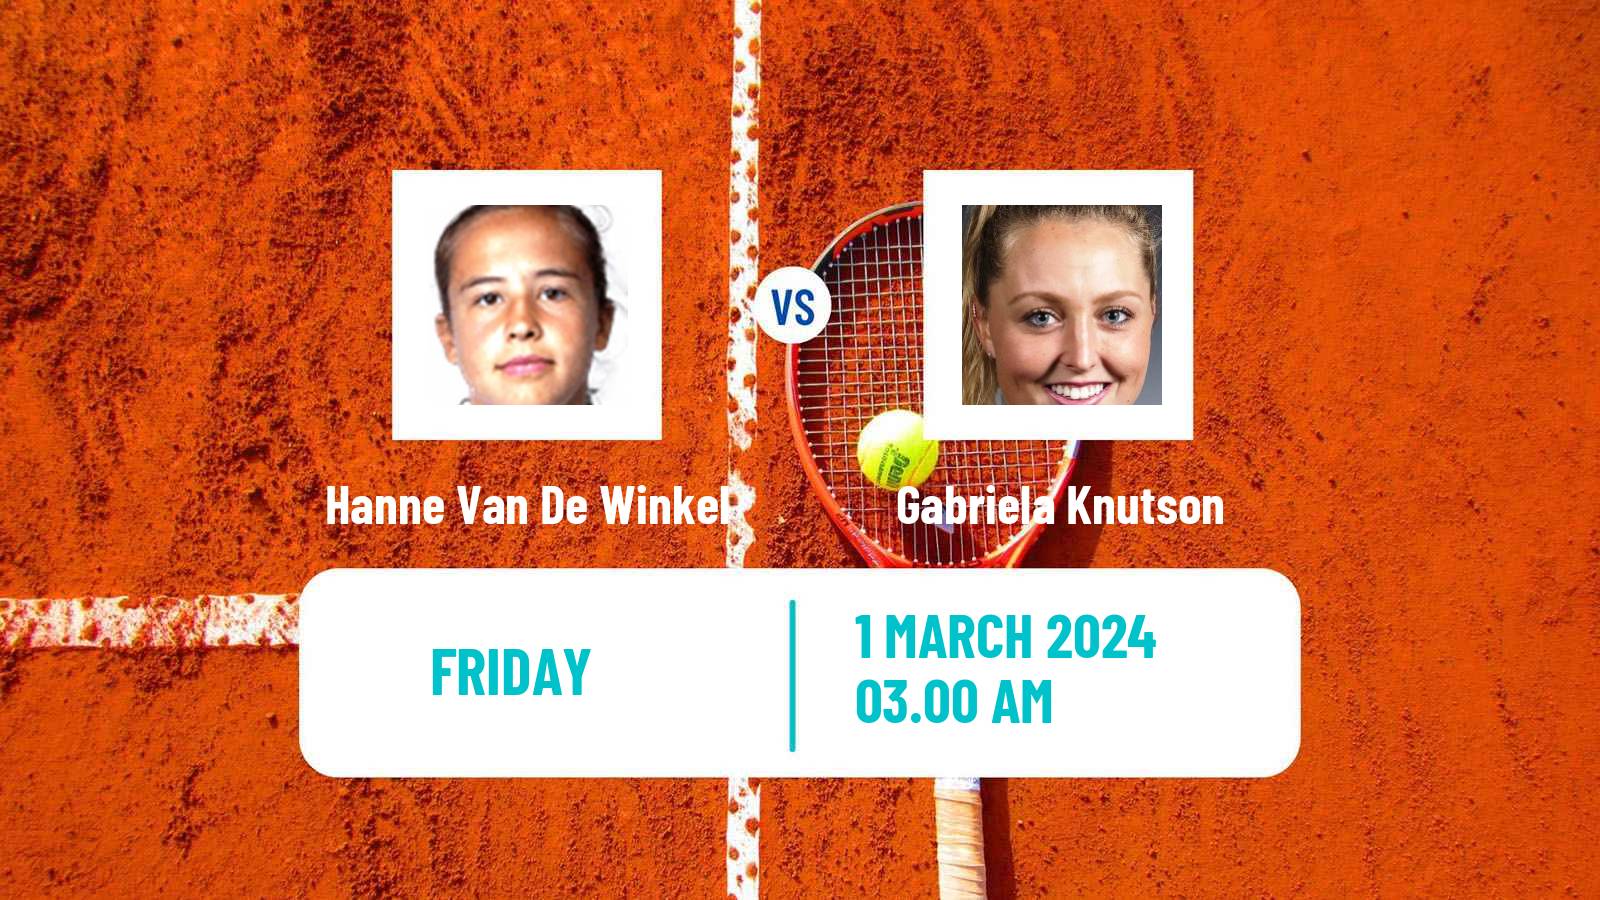 Tennis ITF W50 Pretoria 2 Women Hanne Van De Winkel - Gabriela Knutson